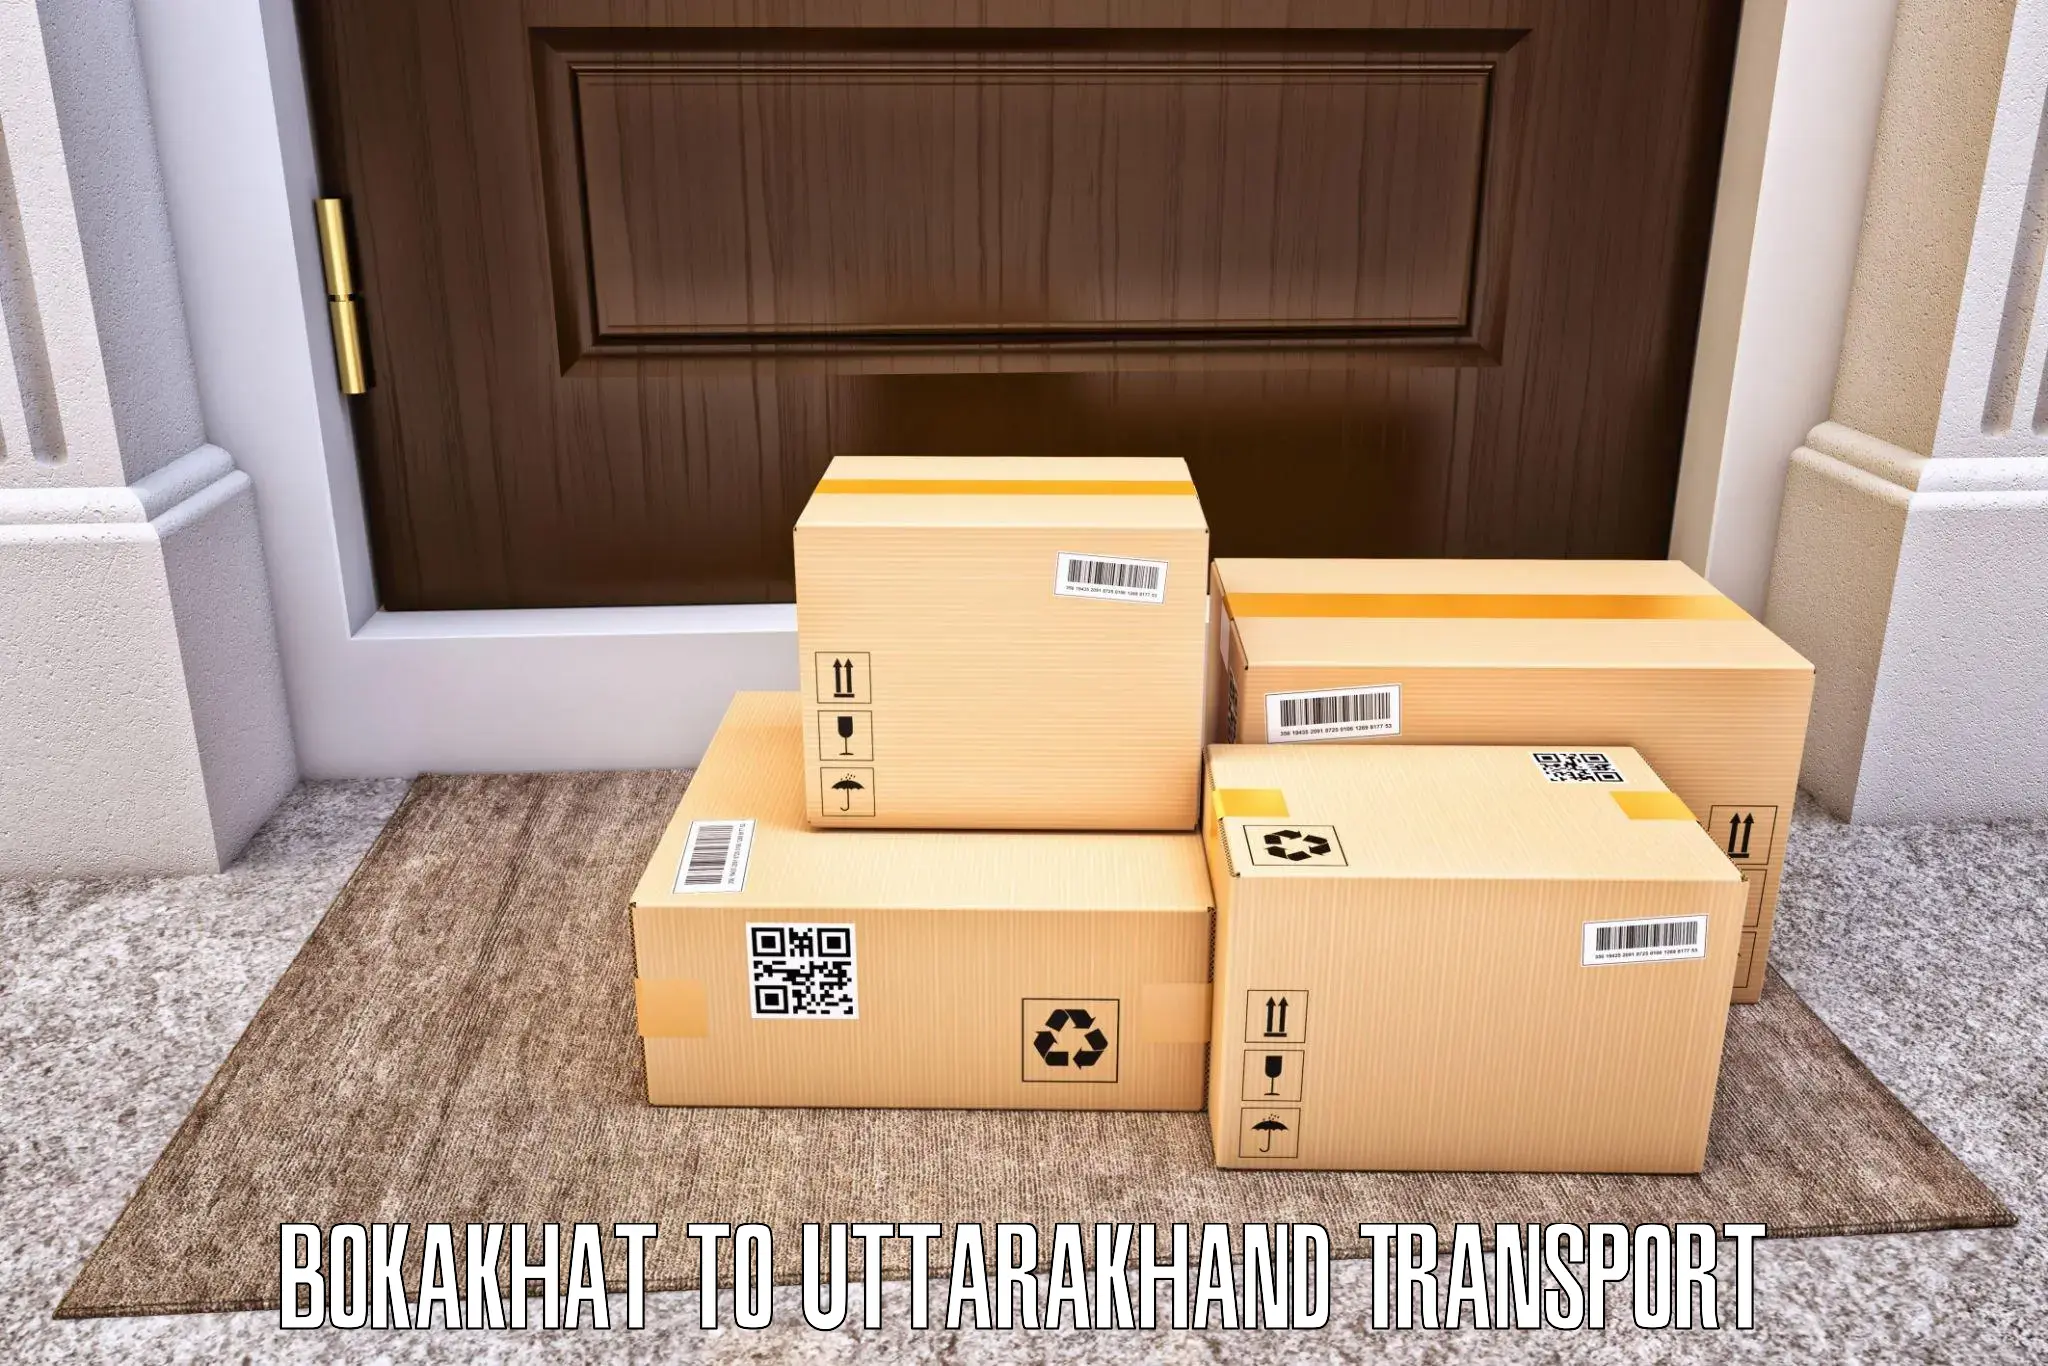 Transport in sharing Bokakhat to Dwarahat